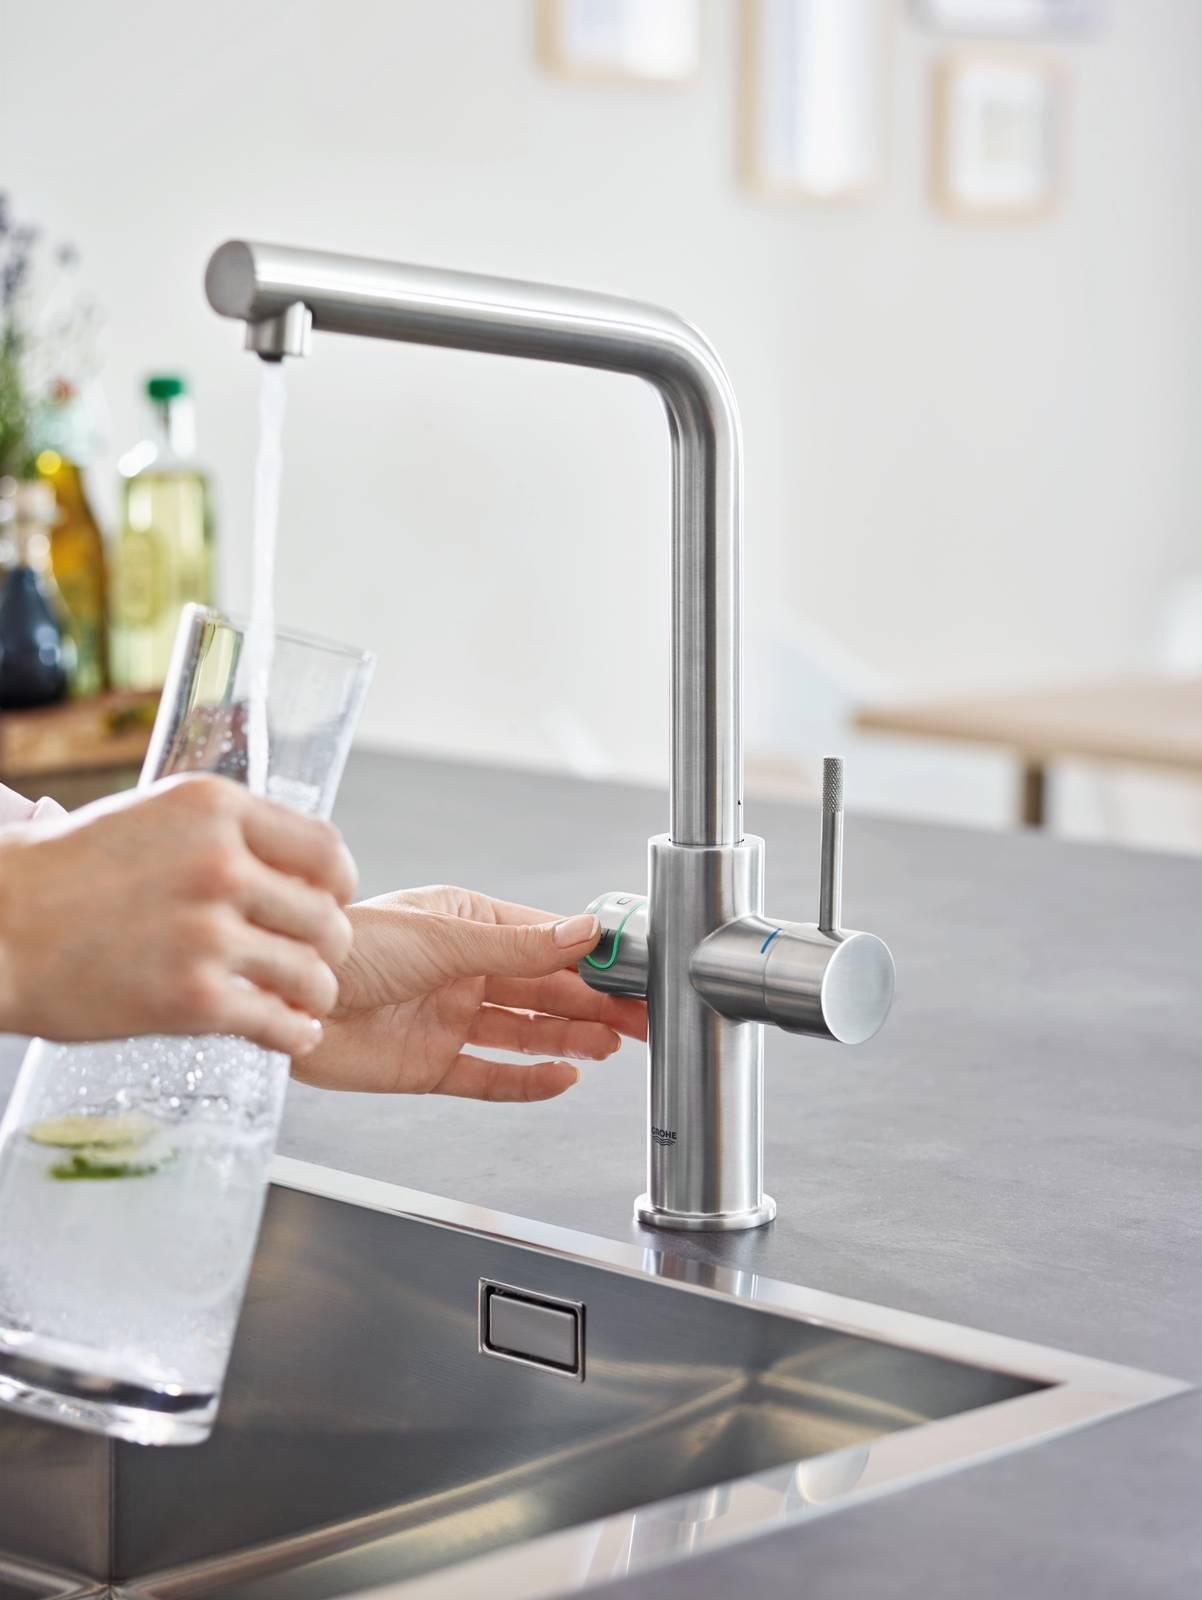 Acqua frizzante casalinga con gasatori e rubinetti speciali - Cose